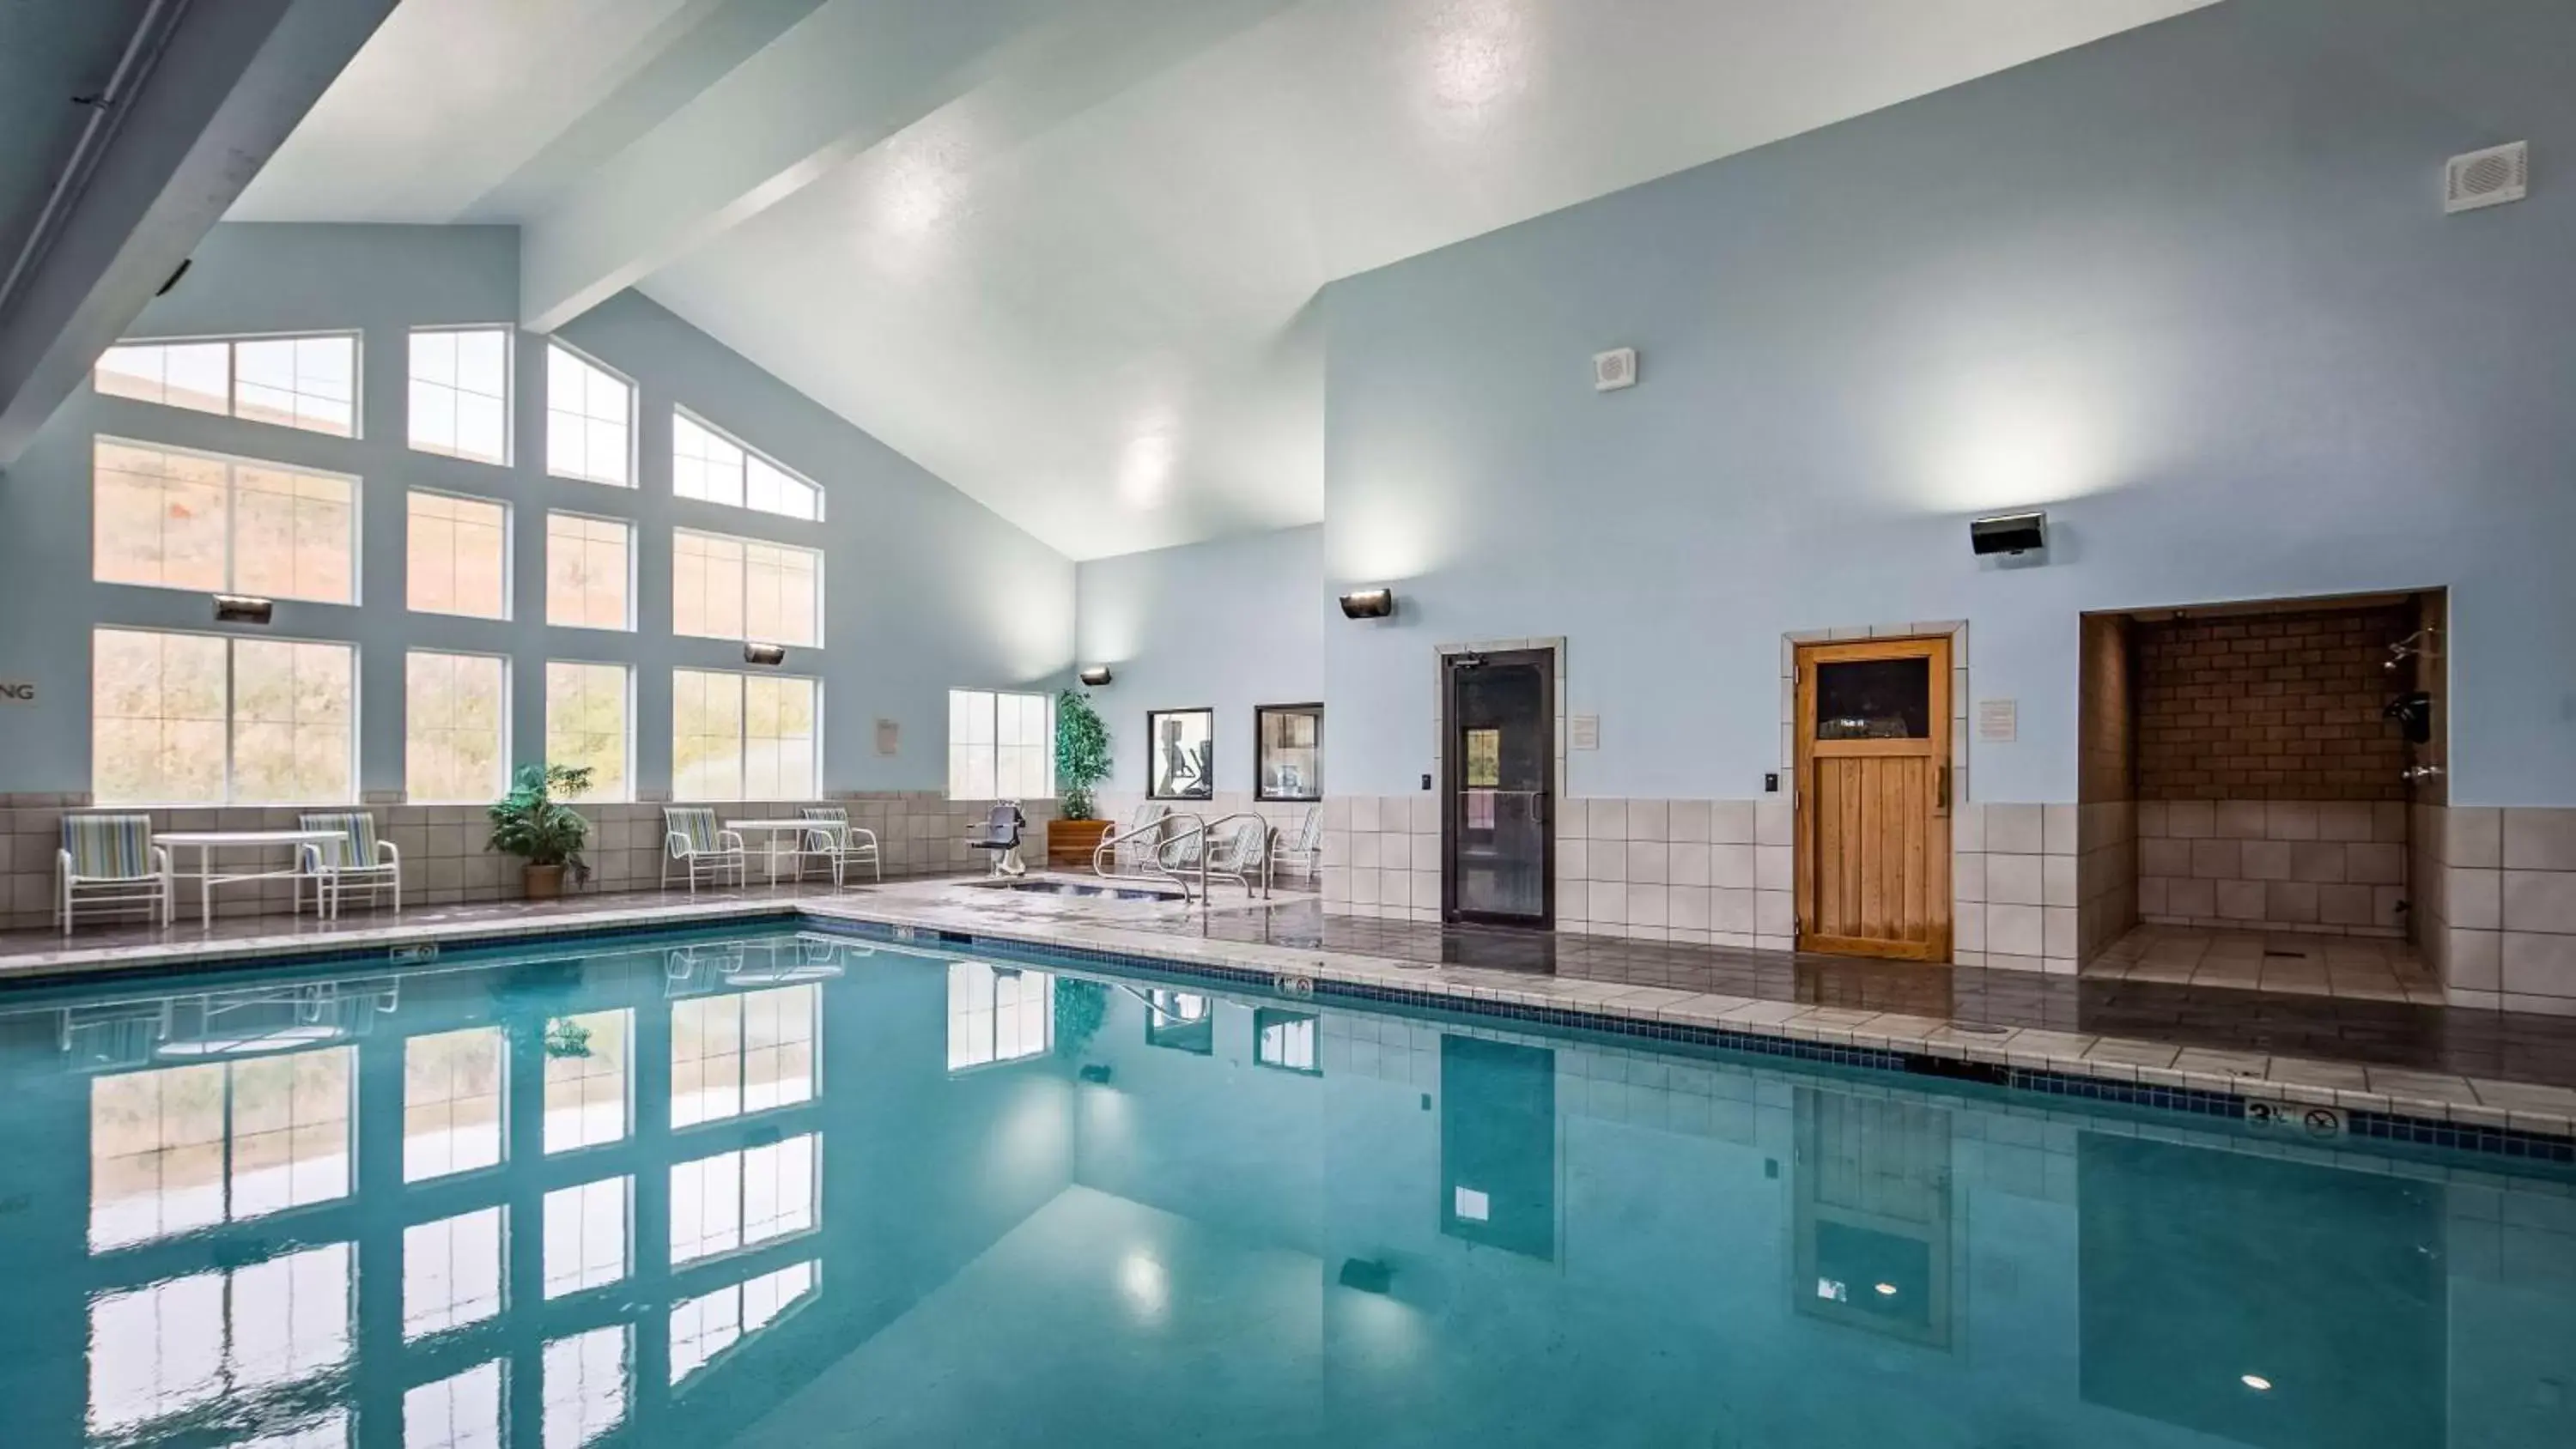 On site, Swimming Pool in Best Western Plus Grant Creek Inn